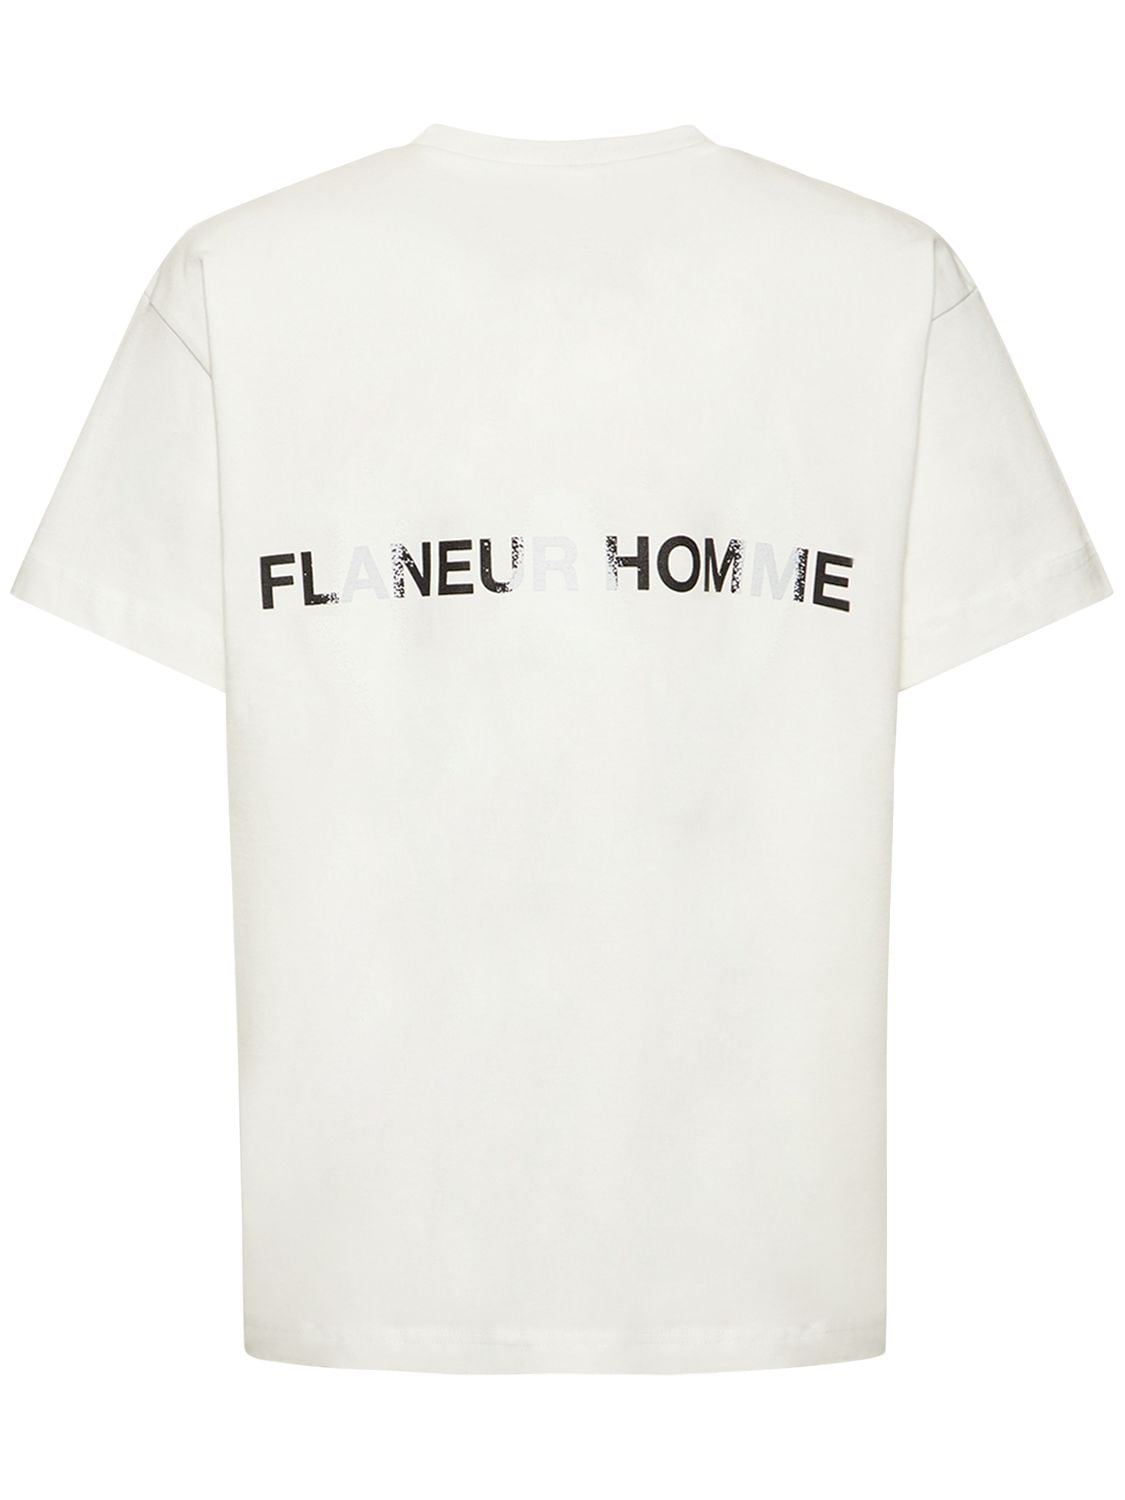 FLANEUR HOMME Peace Logo Cotton Jersey T-shirt